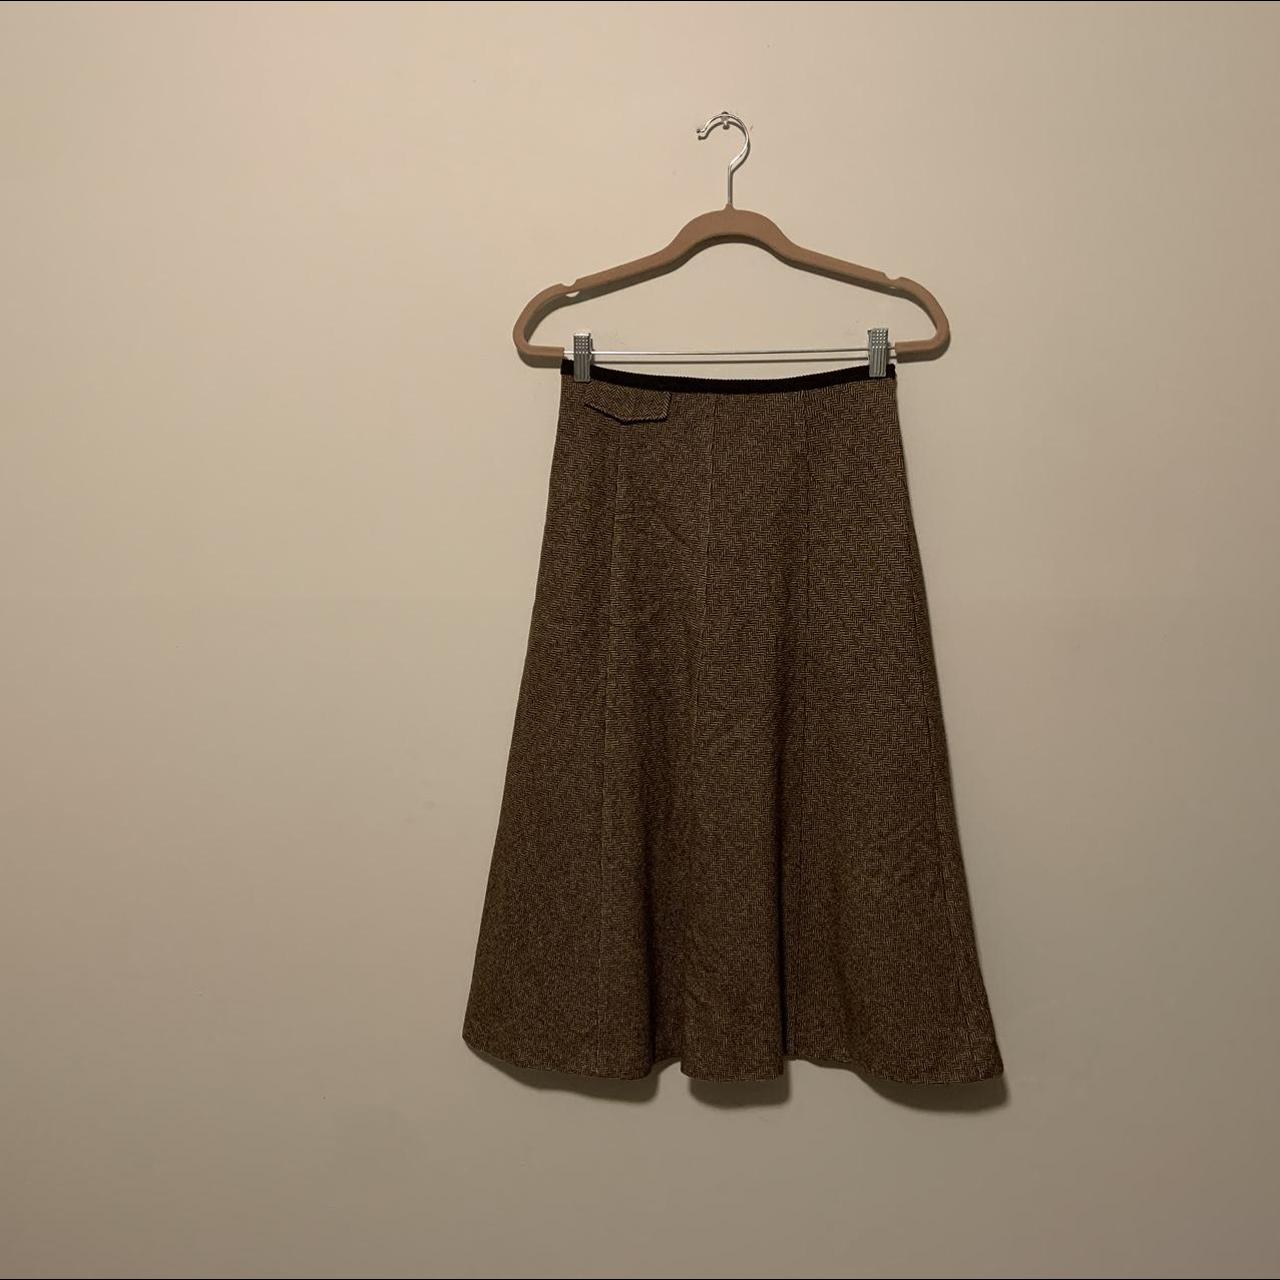 Max Mara Women's Brown and Tan Skirt